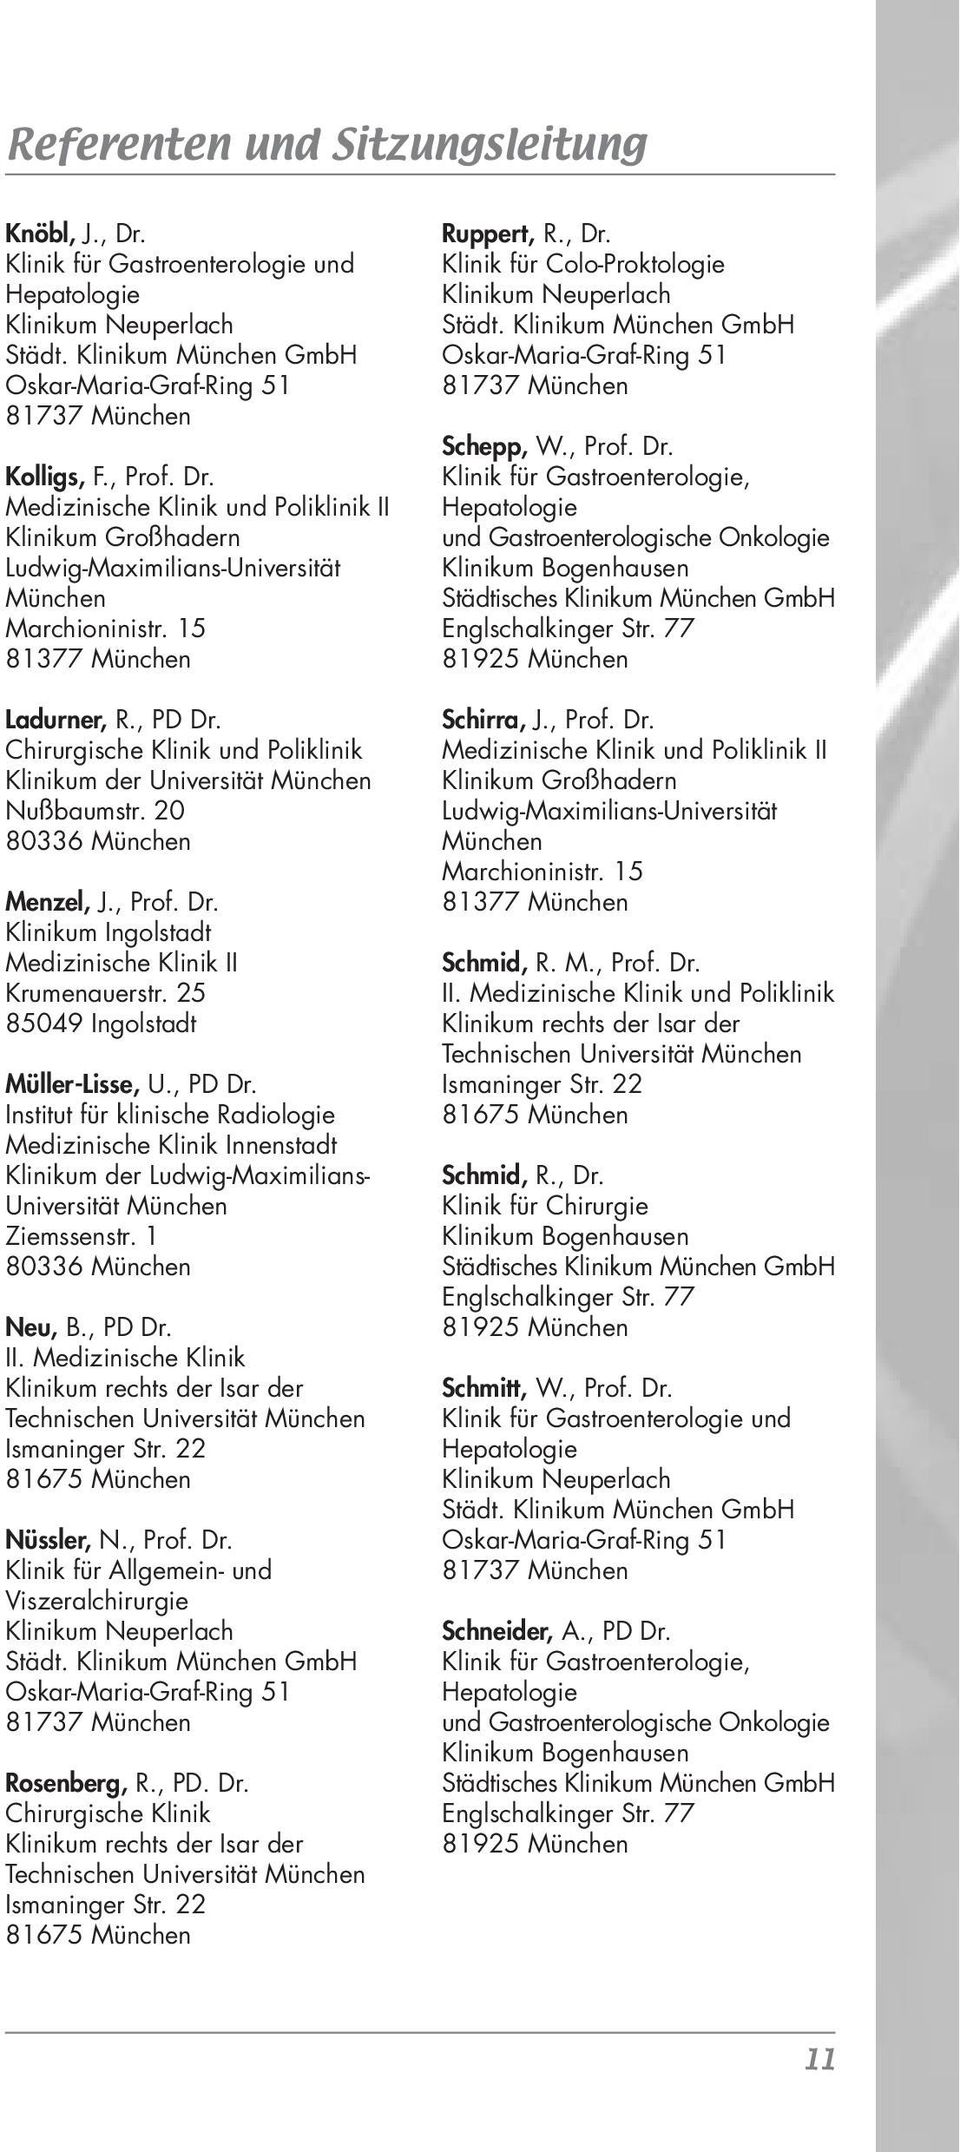 25 85049 Ingolstadt Müller-Lisse, U., PD Dr. Institut für klinische Radiologie Medizinische Klinik Innenstadt Klinikum der Ludwig-Maximilians- Universität München Ziemssenstr. 1 80336 München Neu, B.